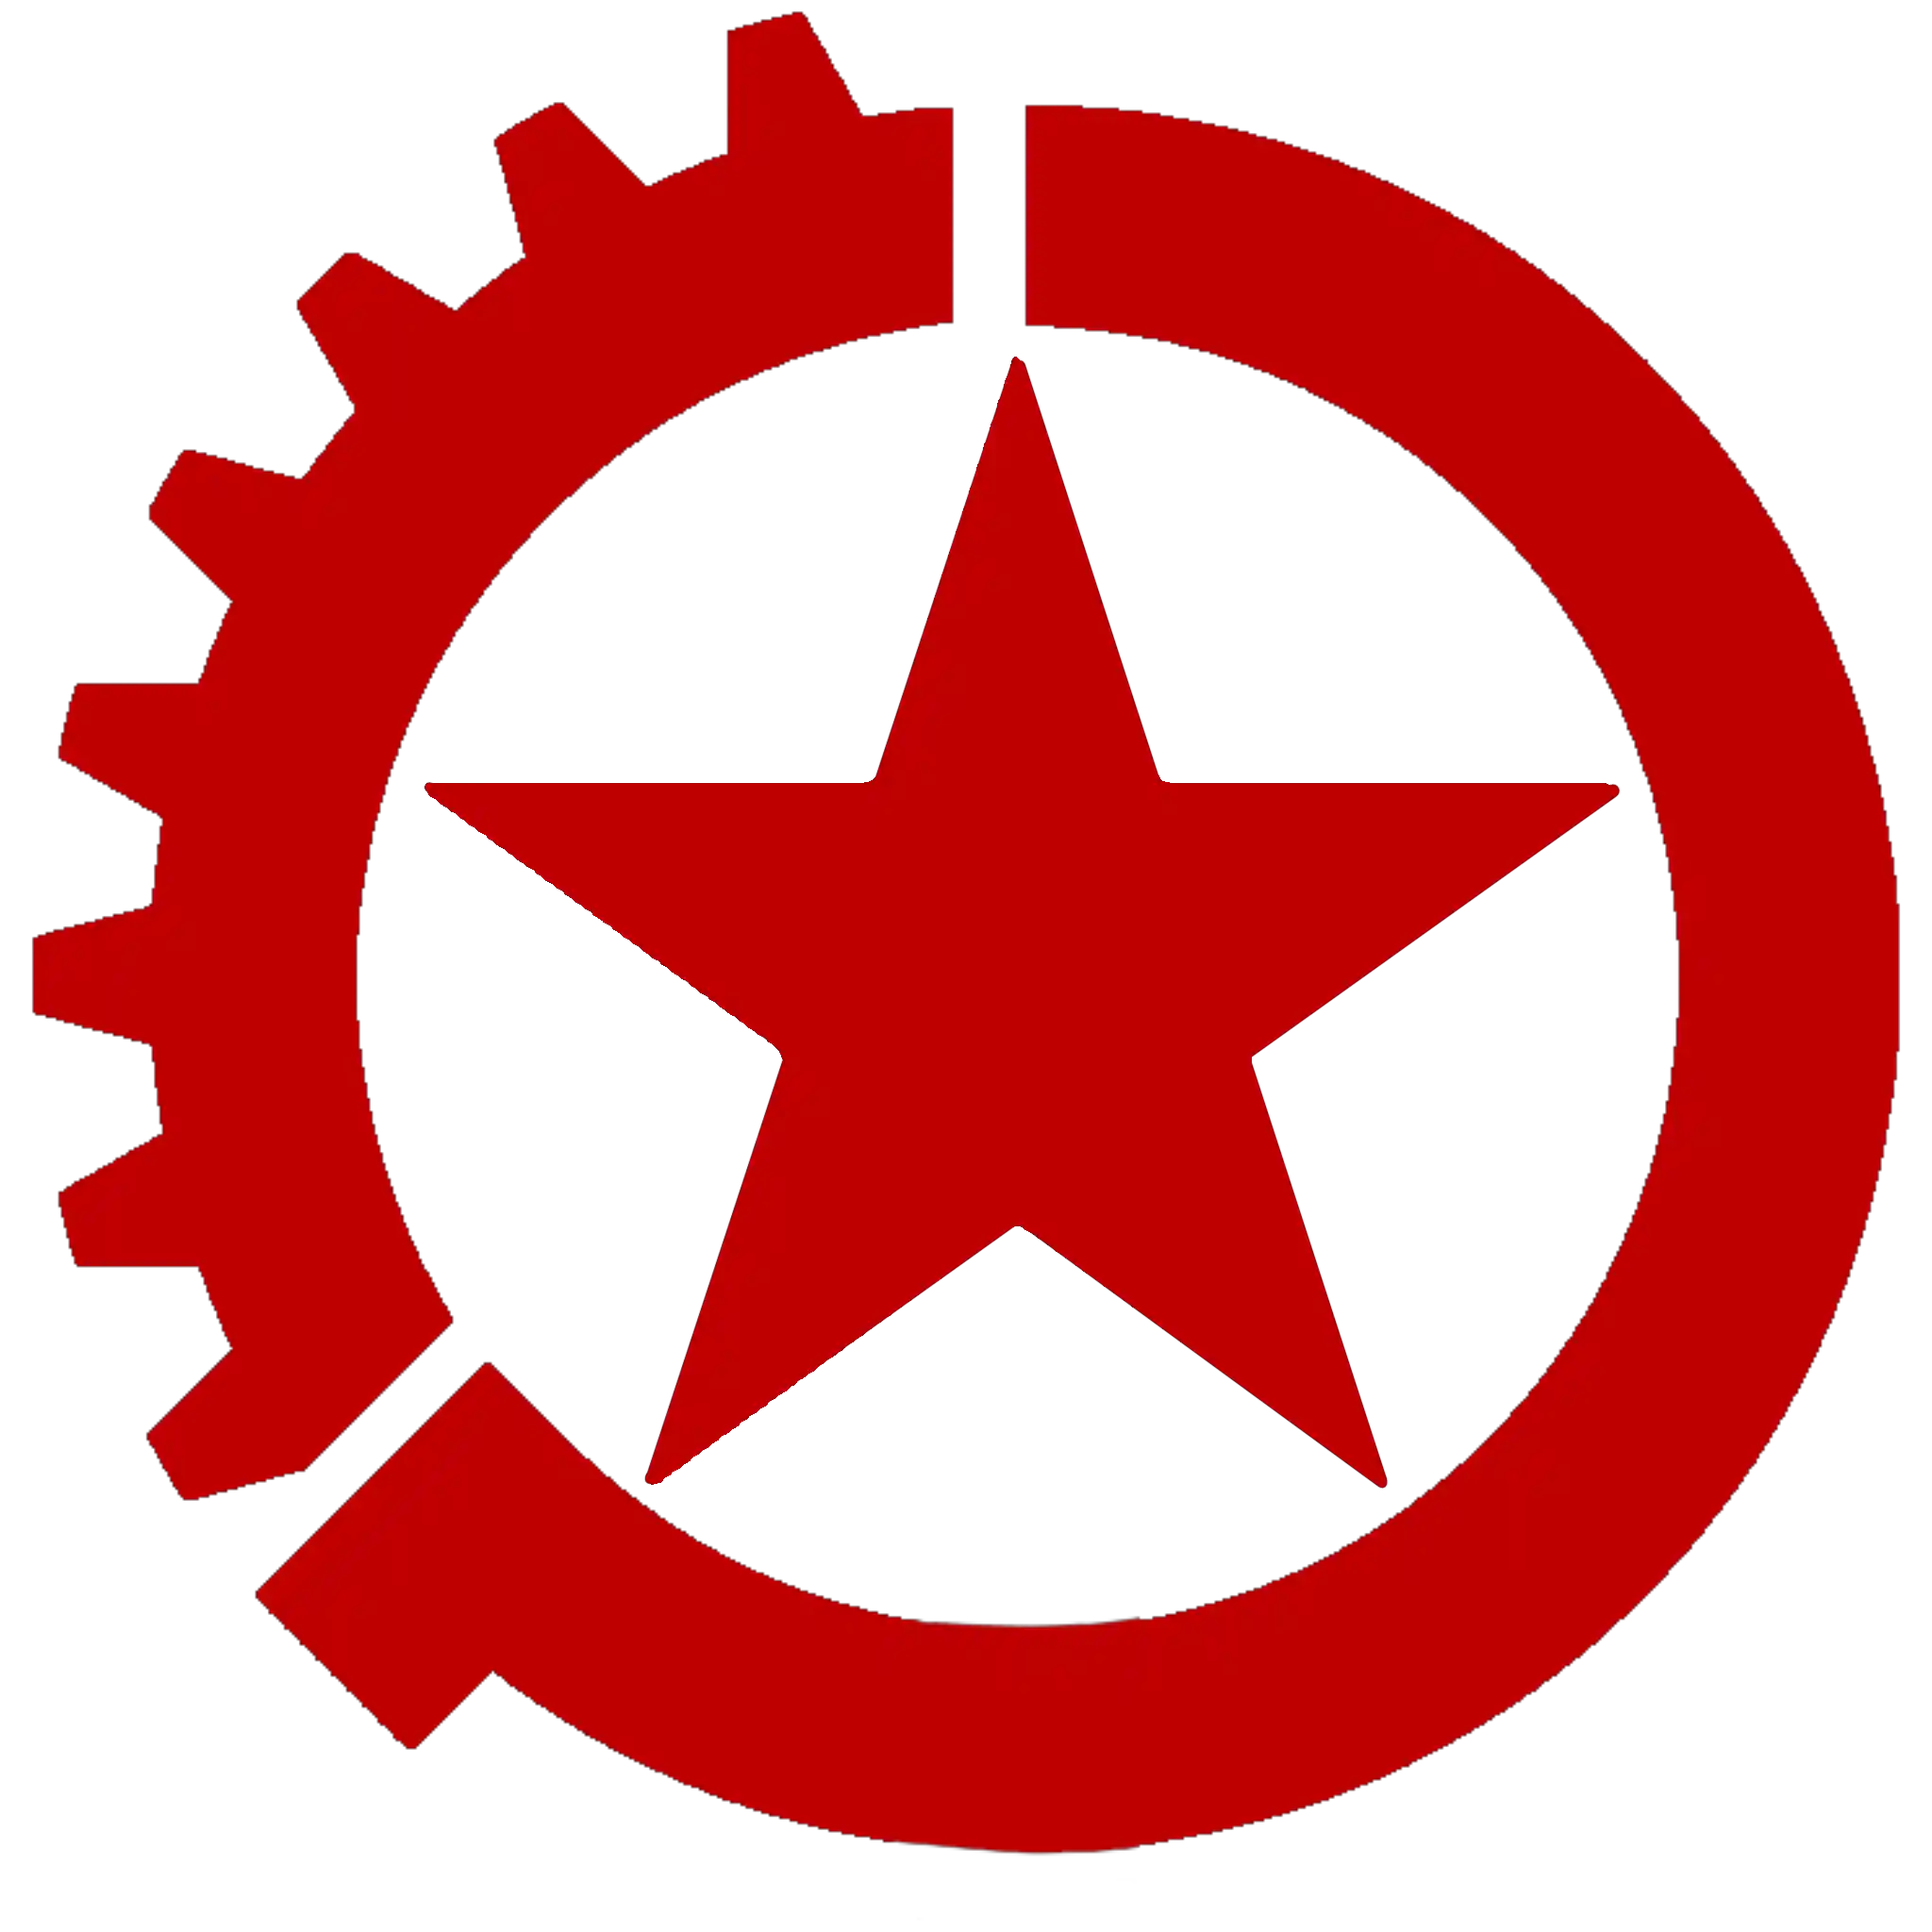 Emblem_of_the_Tsingchurian_Democratic_Revolutionary_Party.png